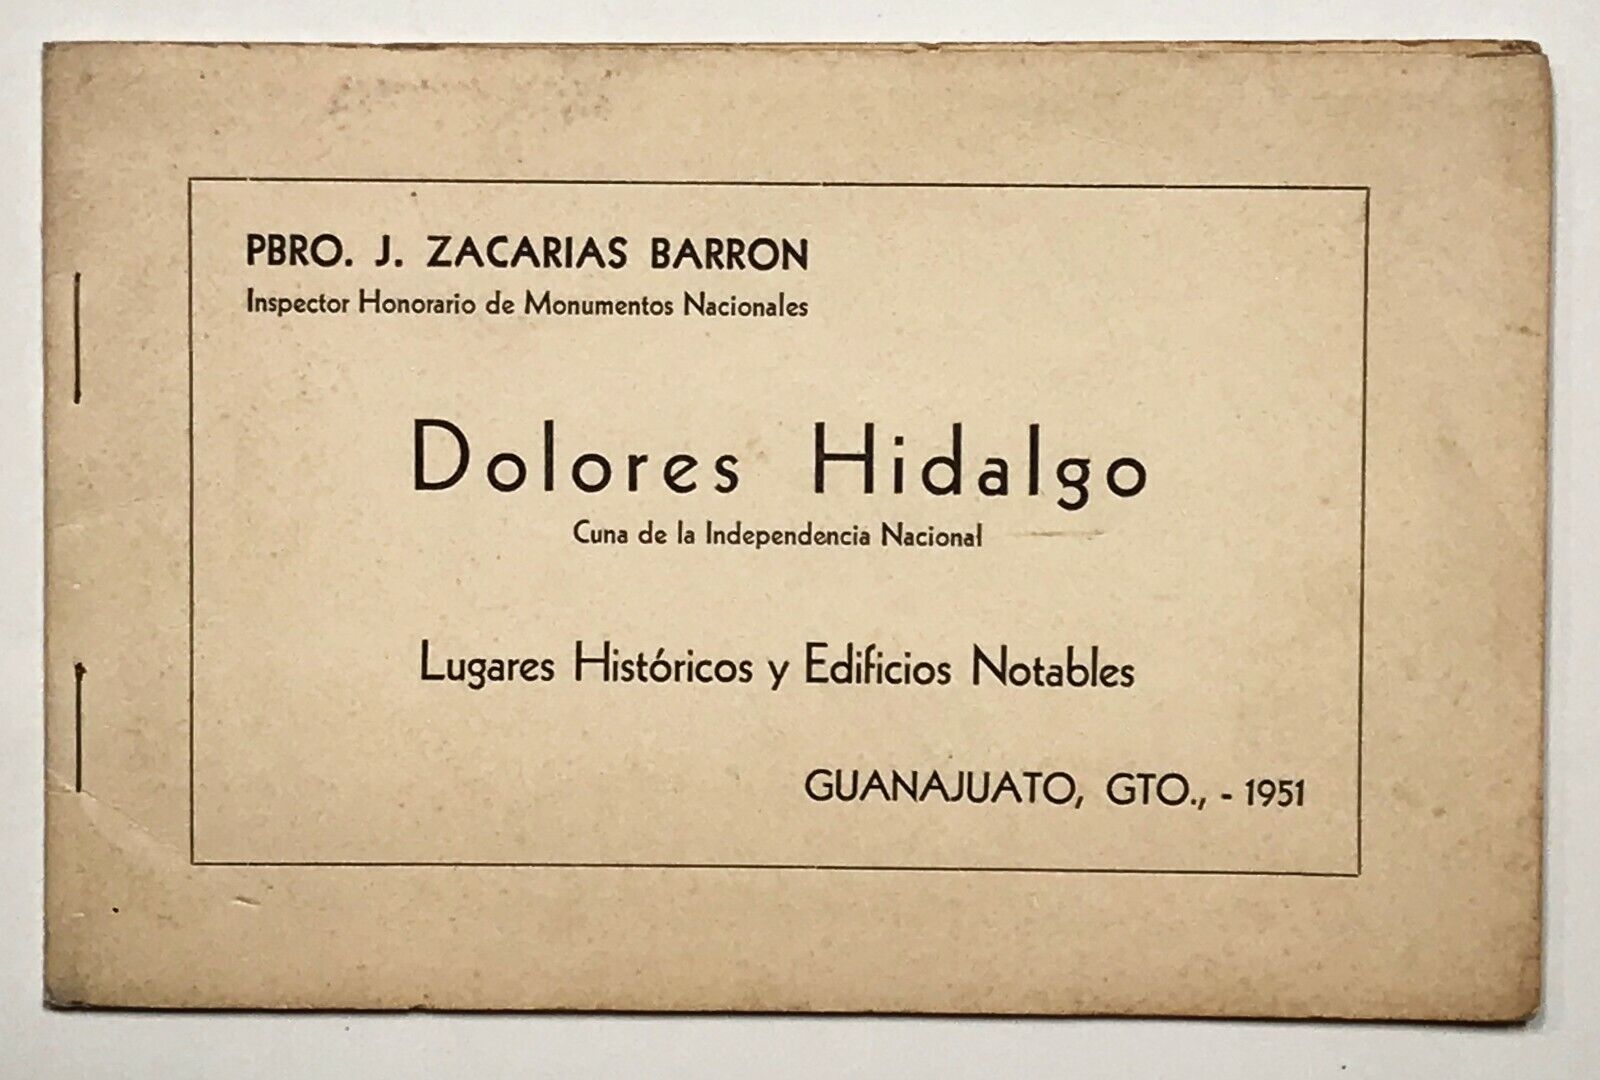 DOLORES HIDALGO. 1951. View book. Mexico.